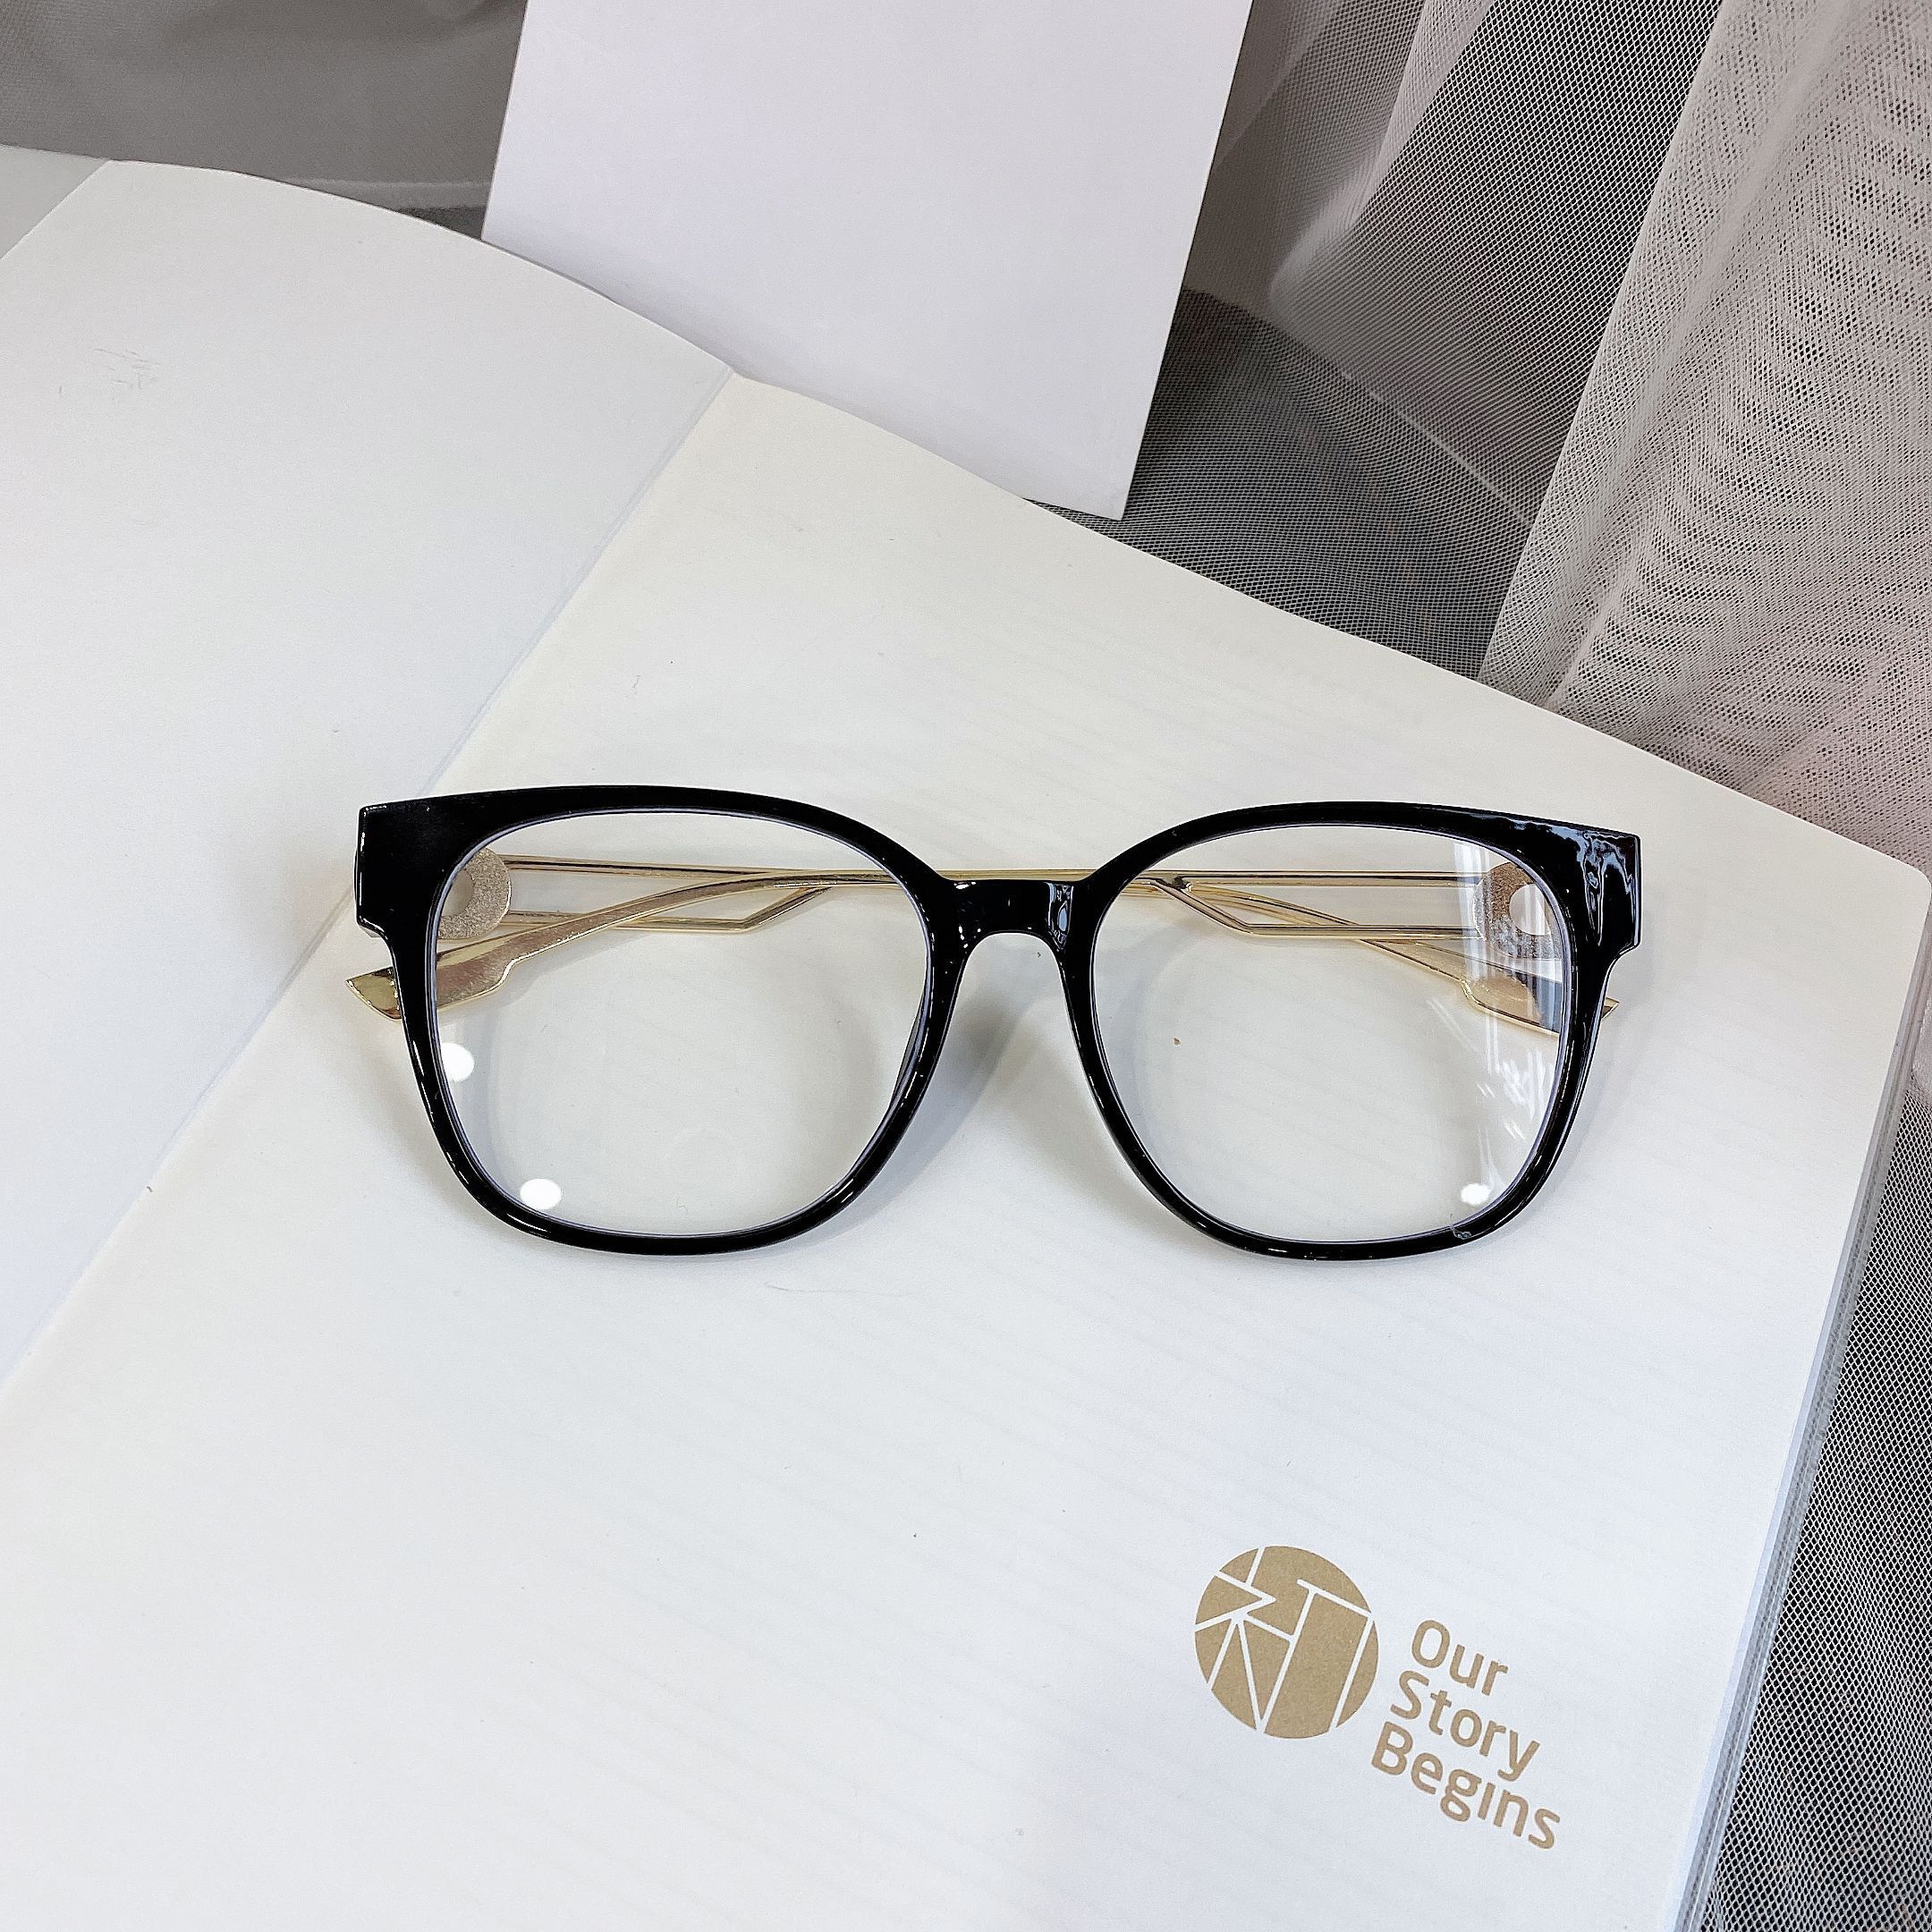 时尚新款平光镜仿眼镜框批发 大框学生眼镜架厂家直销详情图5